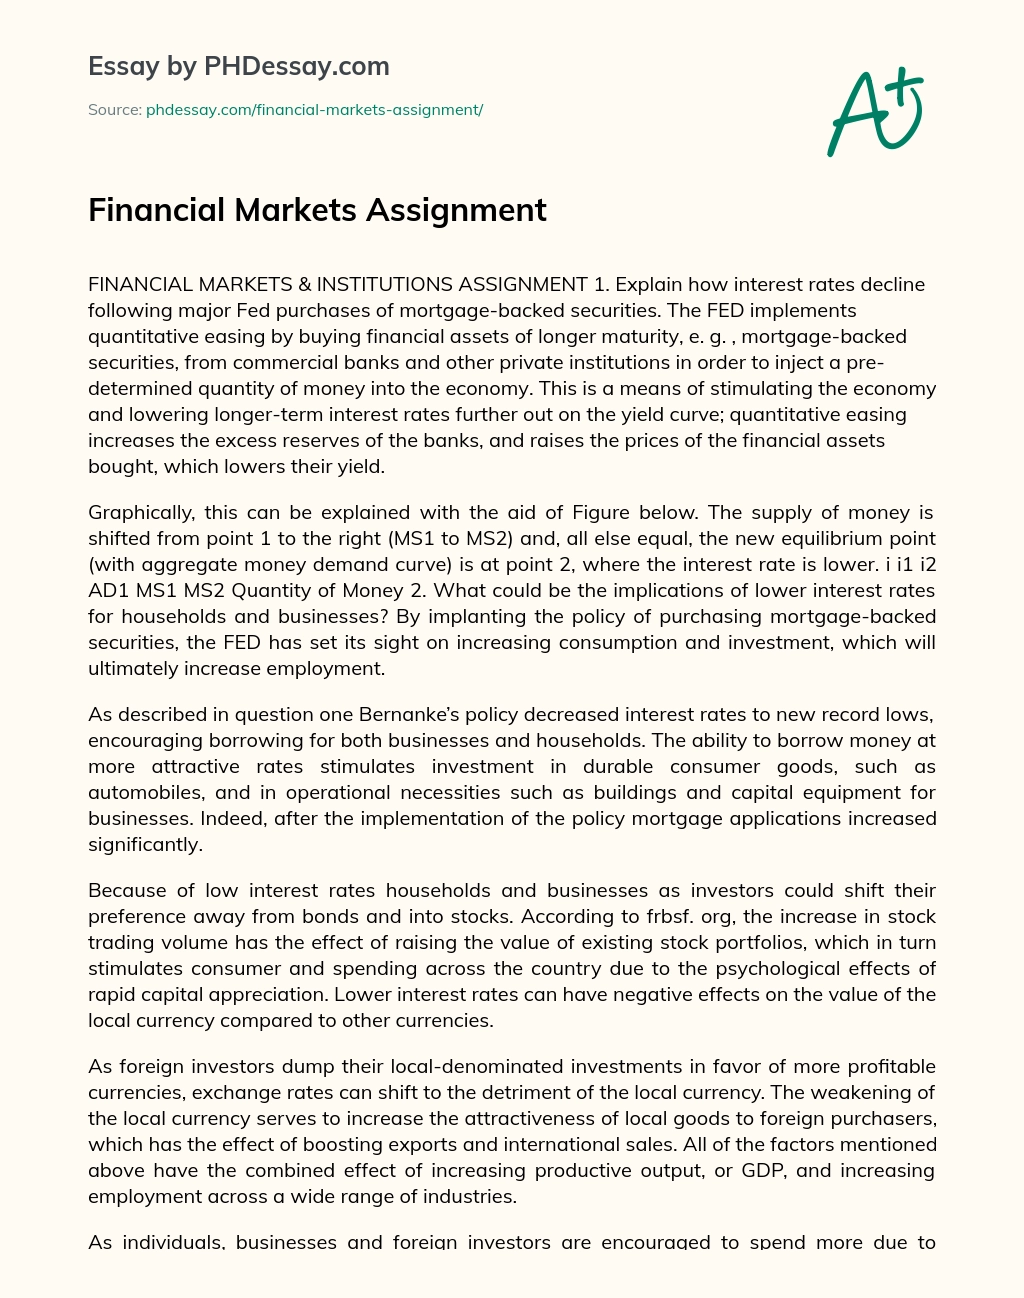 Financial Markets Assignment essay